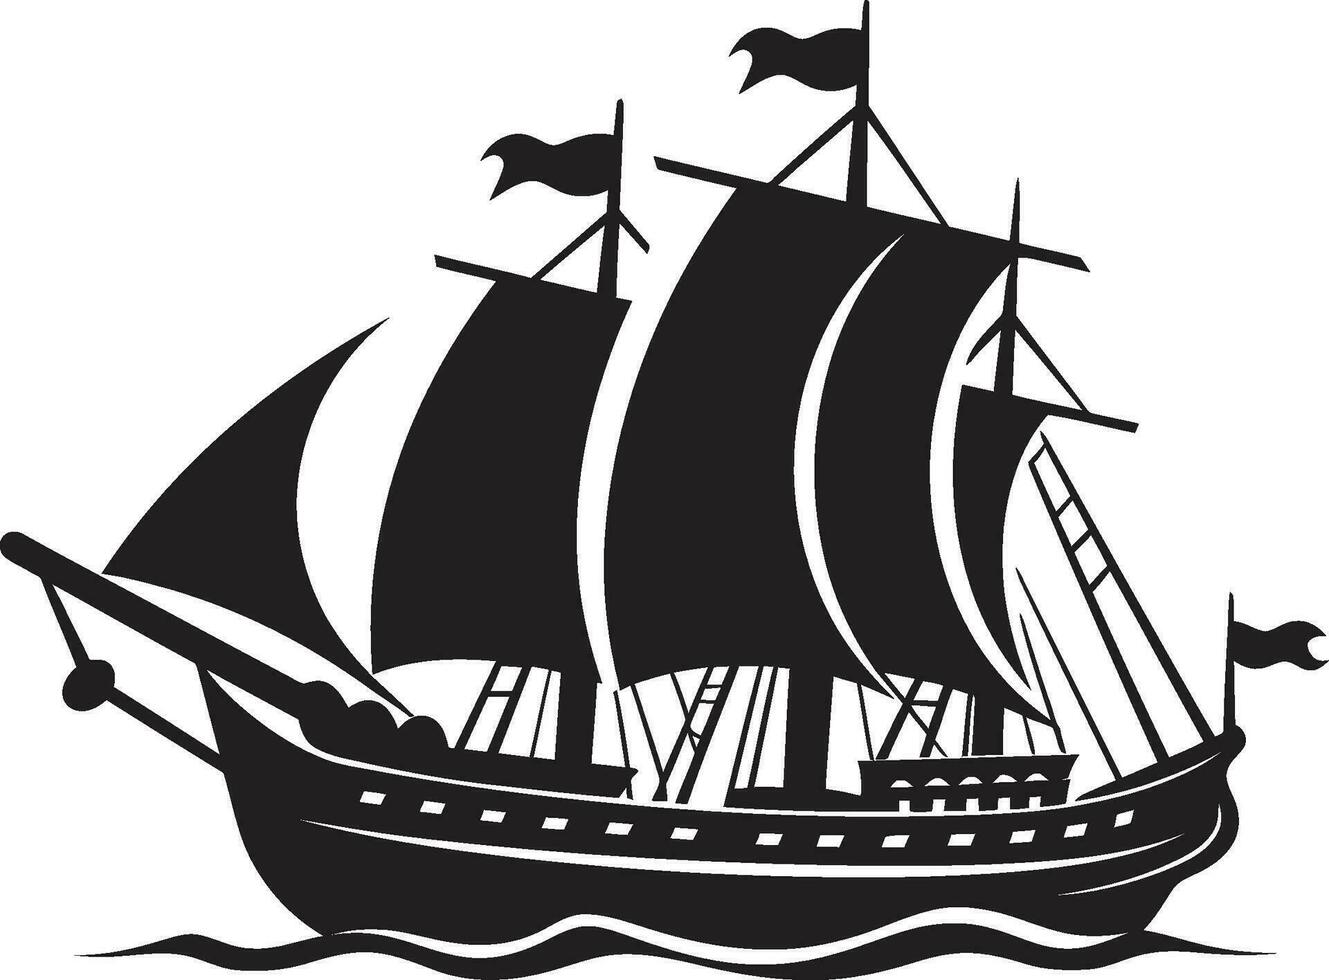 historique périple noir ancien navire ancien navire vecteur navire emblème